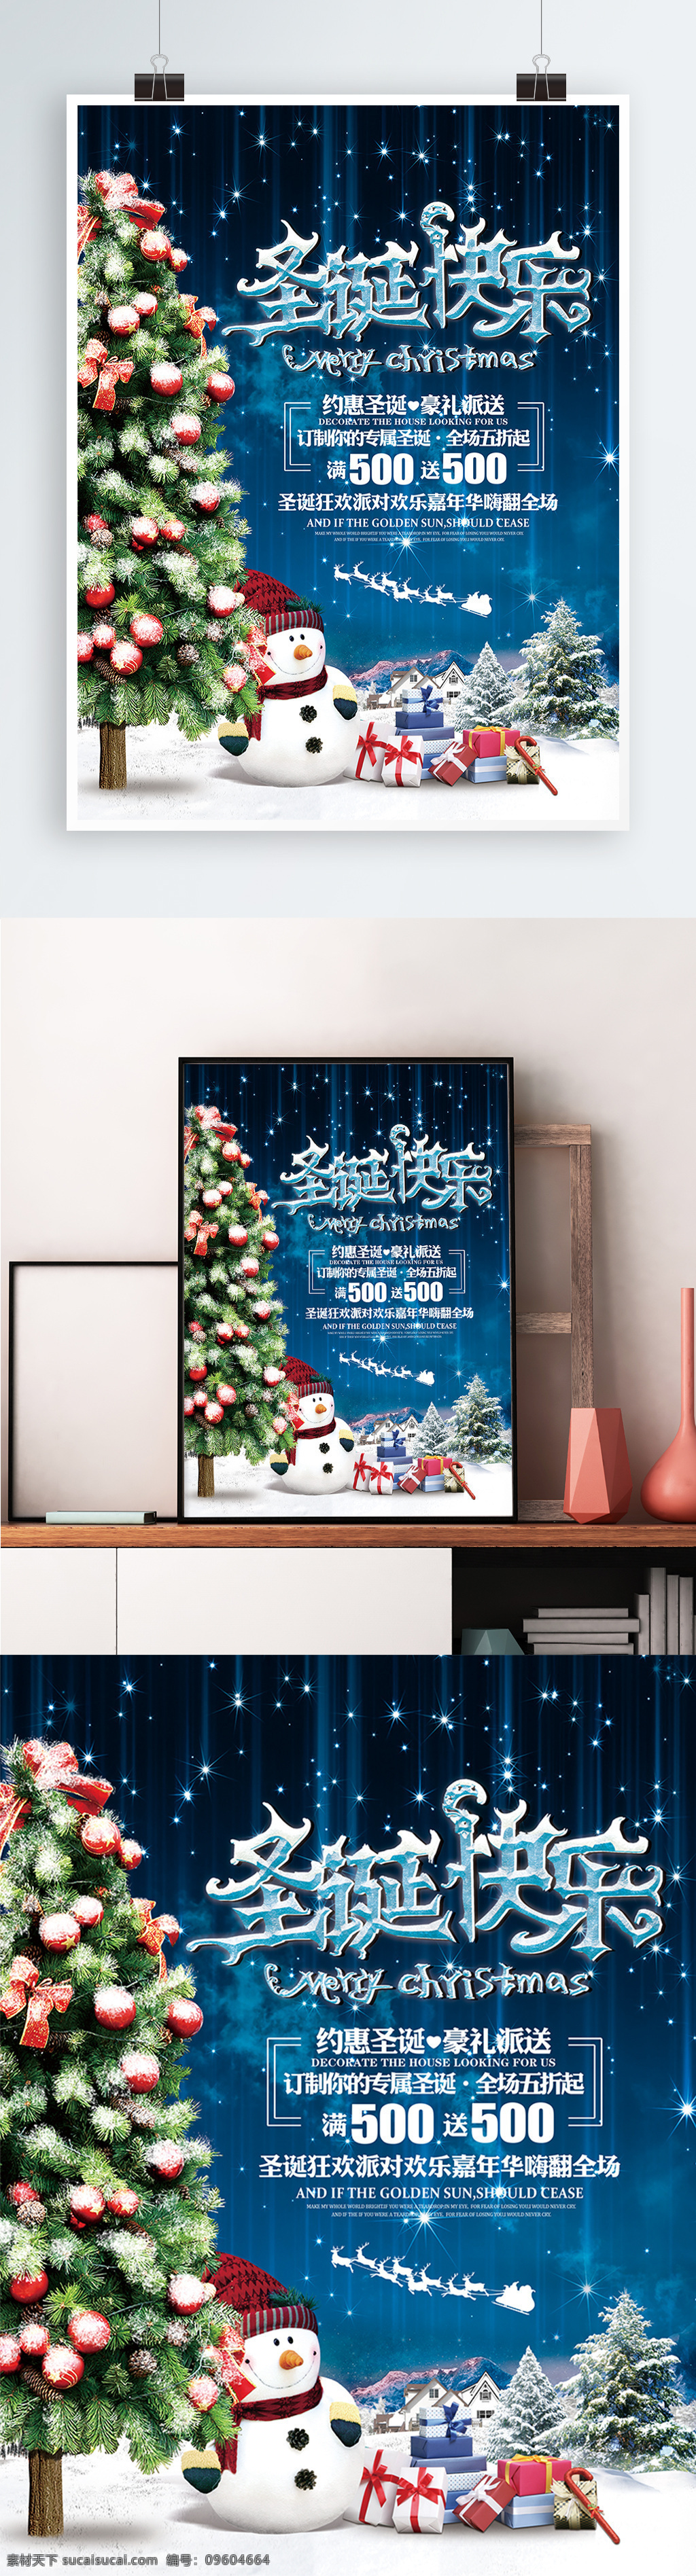 圣诞快乐 圣诞节 宣传 促销 海报 展板 圣诞 圣诞树 商场 商店 活动